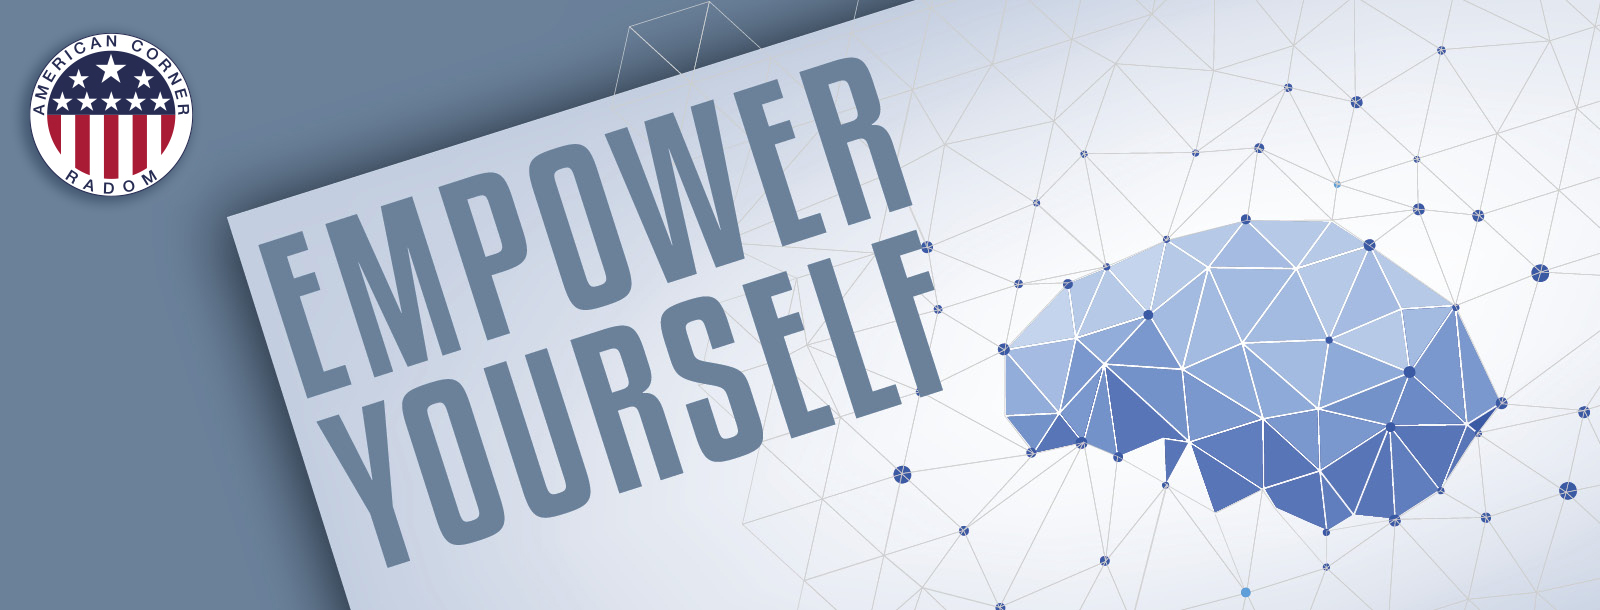 Empower yourself - DEEP WORK